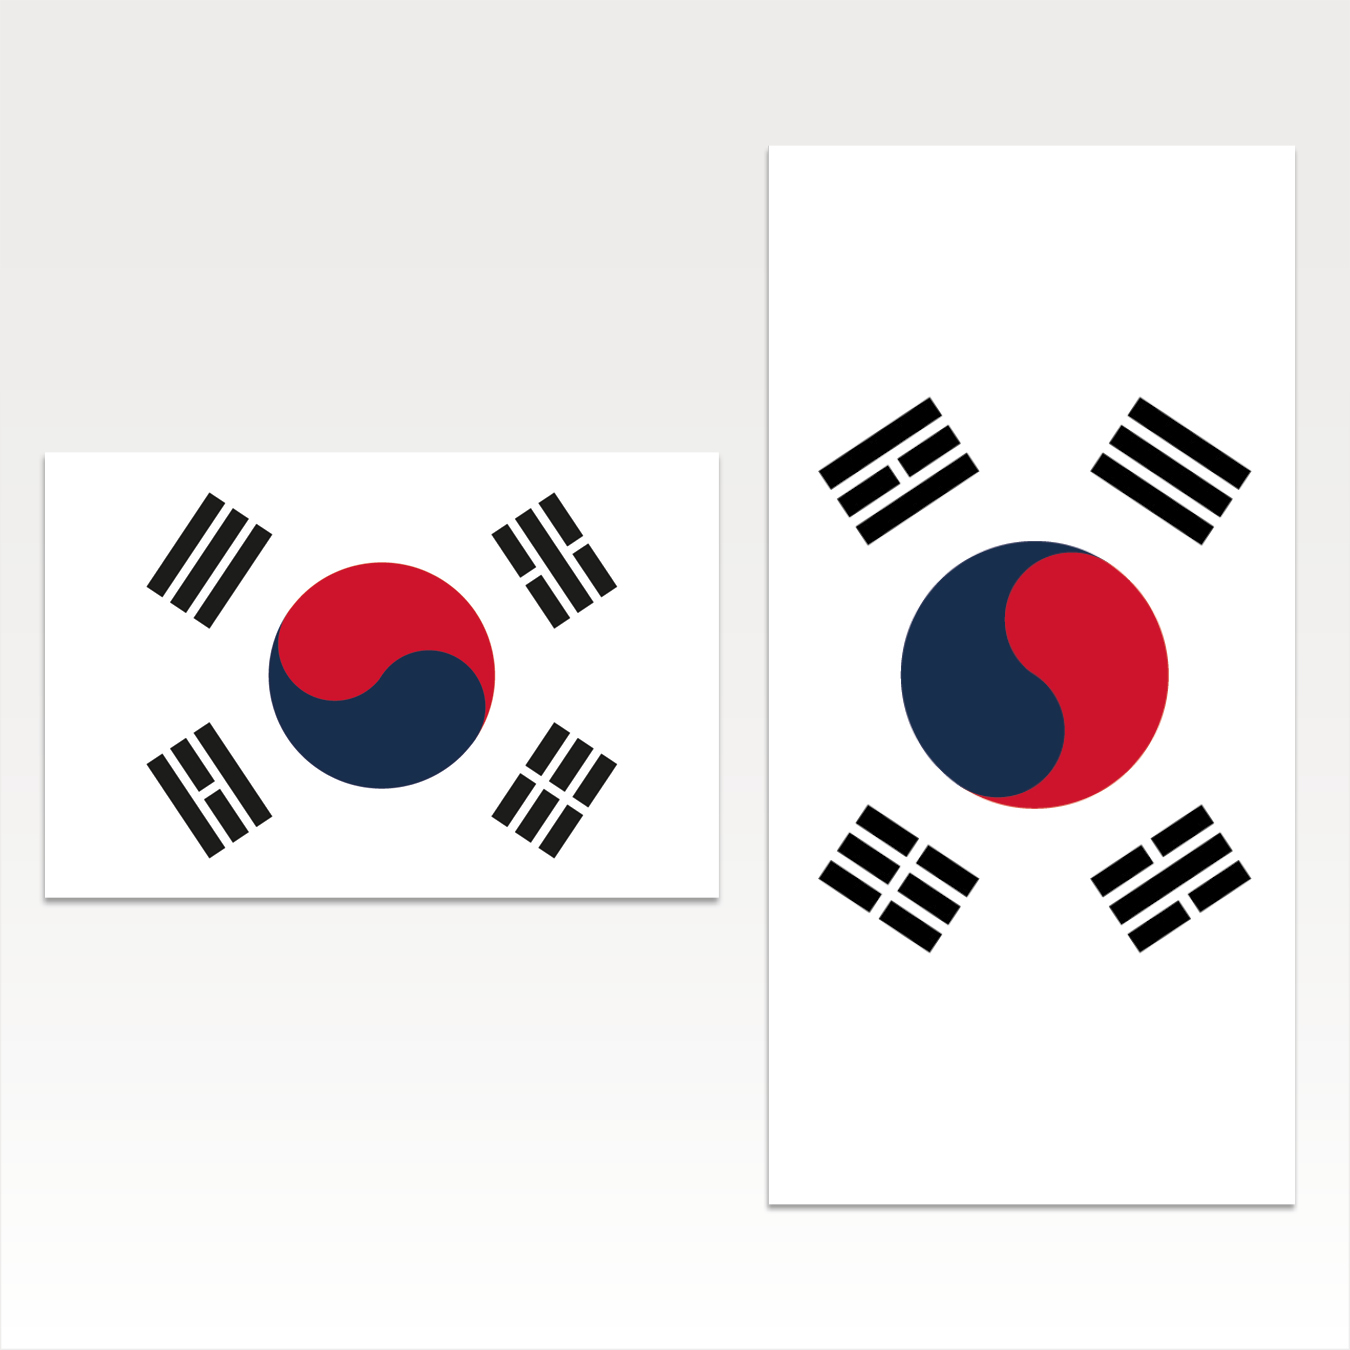 Korea Süd